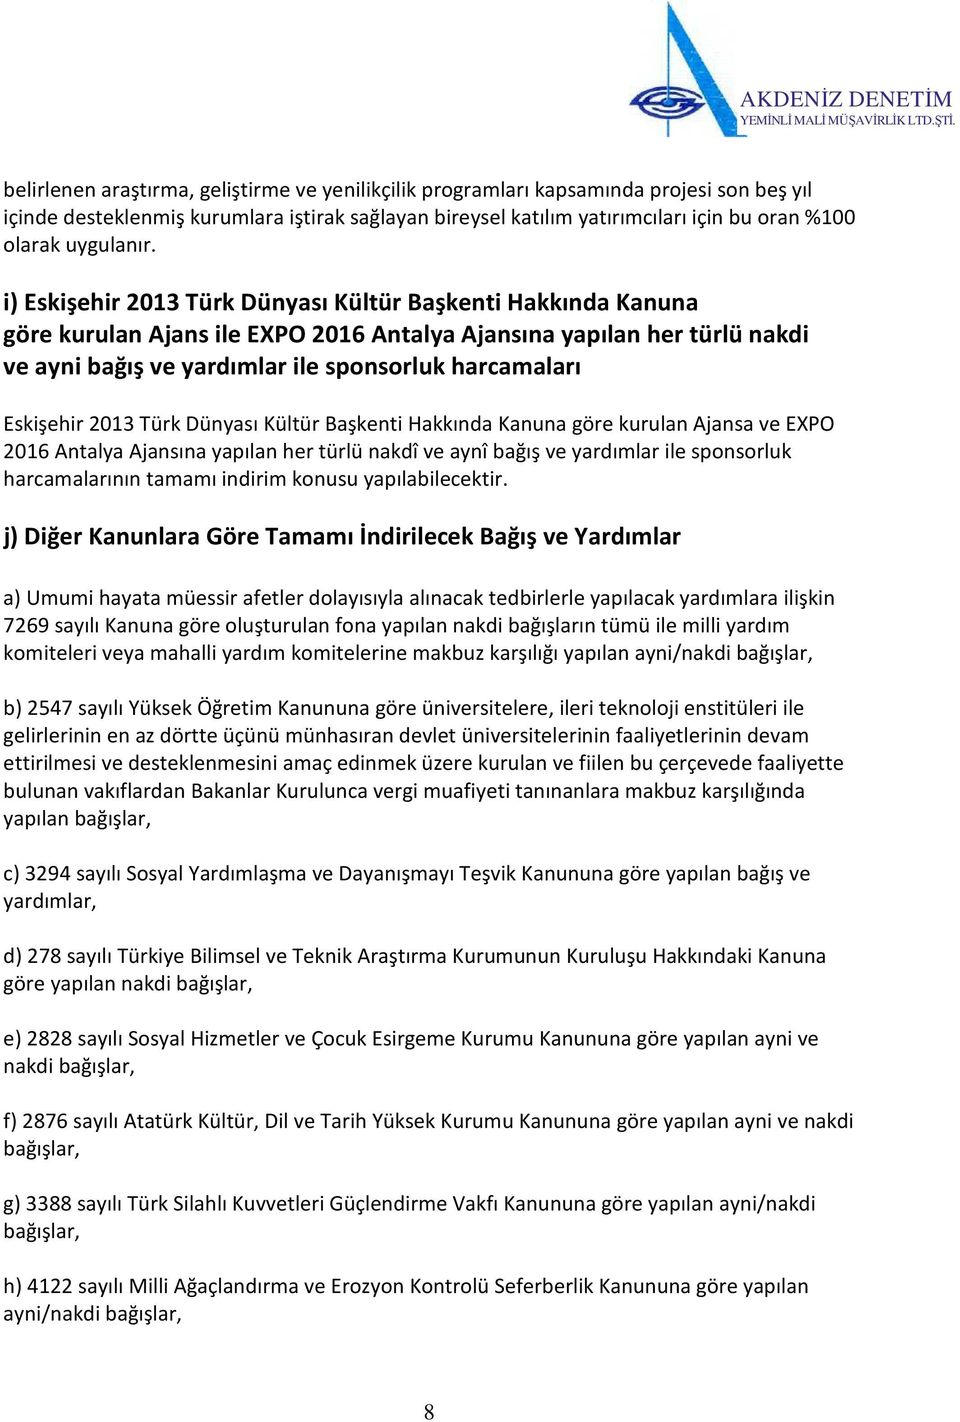 i) Eskişehir 2013 Türk Dünyası Kültür Başkenti Hakkında Kanuna göre kurulan Ajans ile EXPO 2016 Antalya Ajansına yapılan her türlü nakdi ve ayni bağış ve yardımlar ile sponsorluk harcamaları